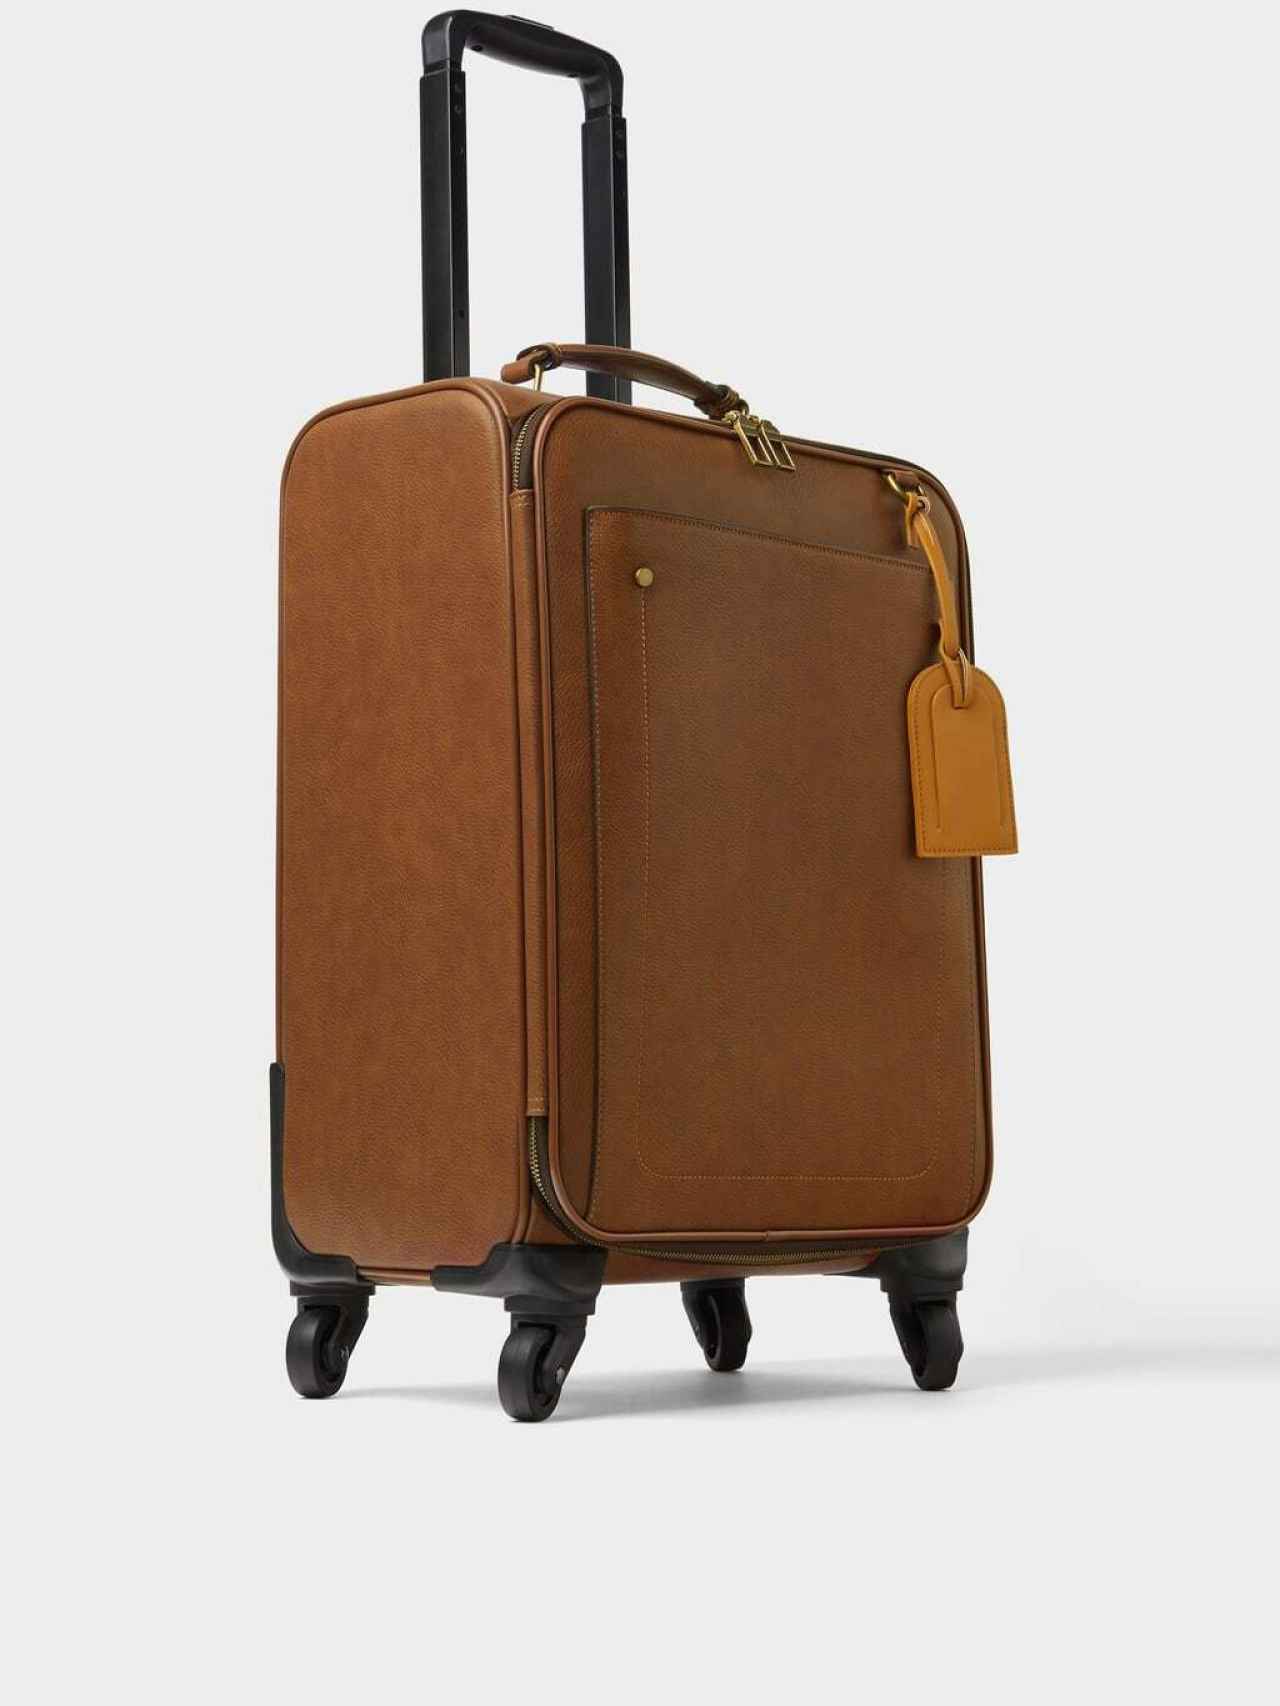 La maleta de está inspirada en la mochila que agotó existencias hace un mes.